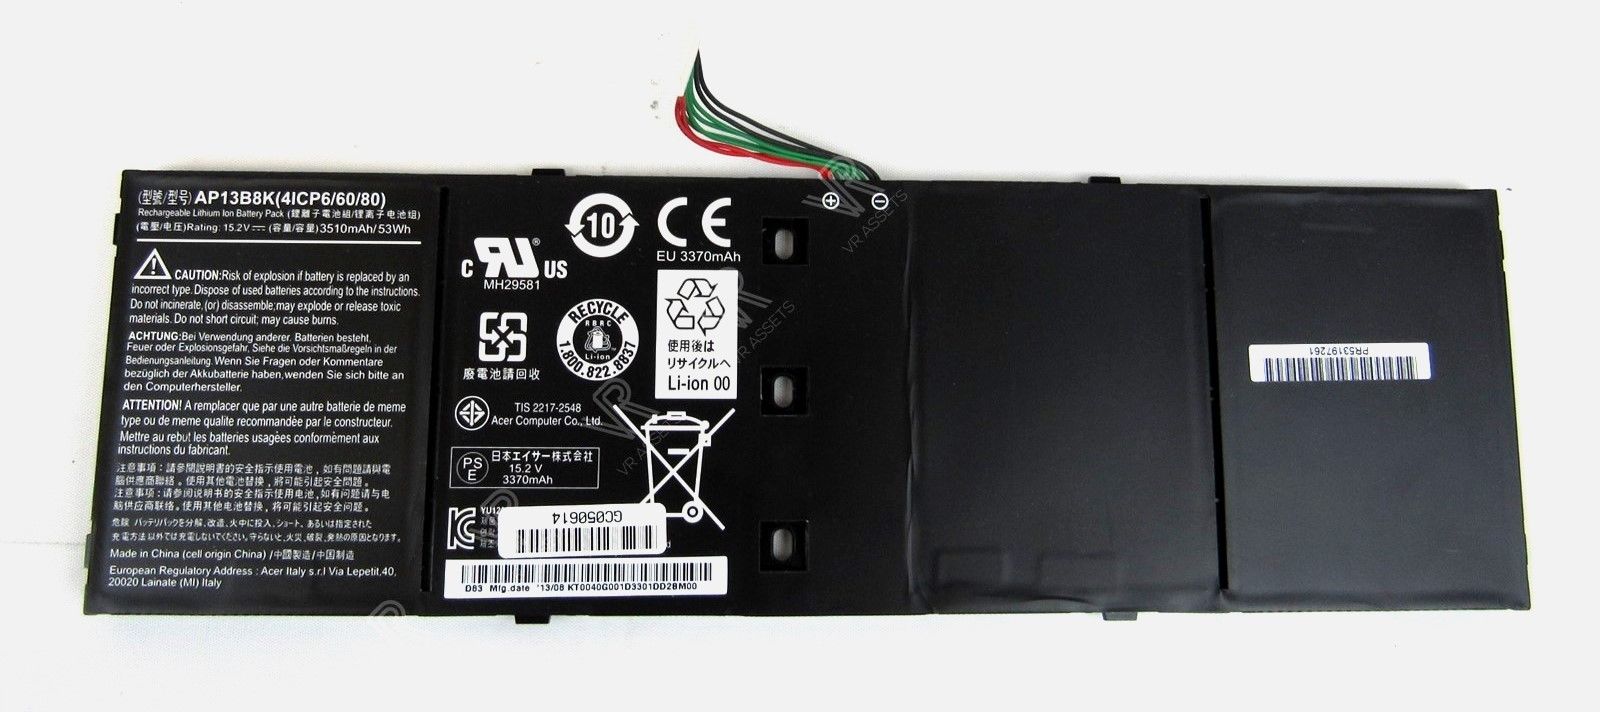 Acer Aspire V5 M5-583P V5-572P V5-572G Battery 3510mAh/53Wh AP13B8K 4ICP6/60/80